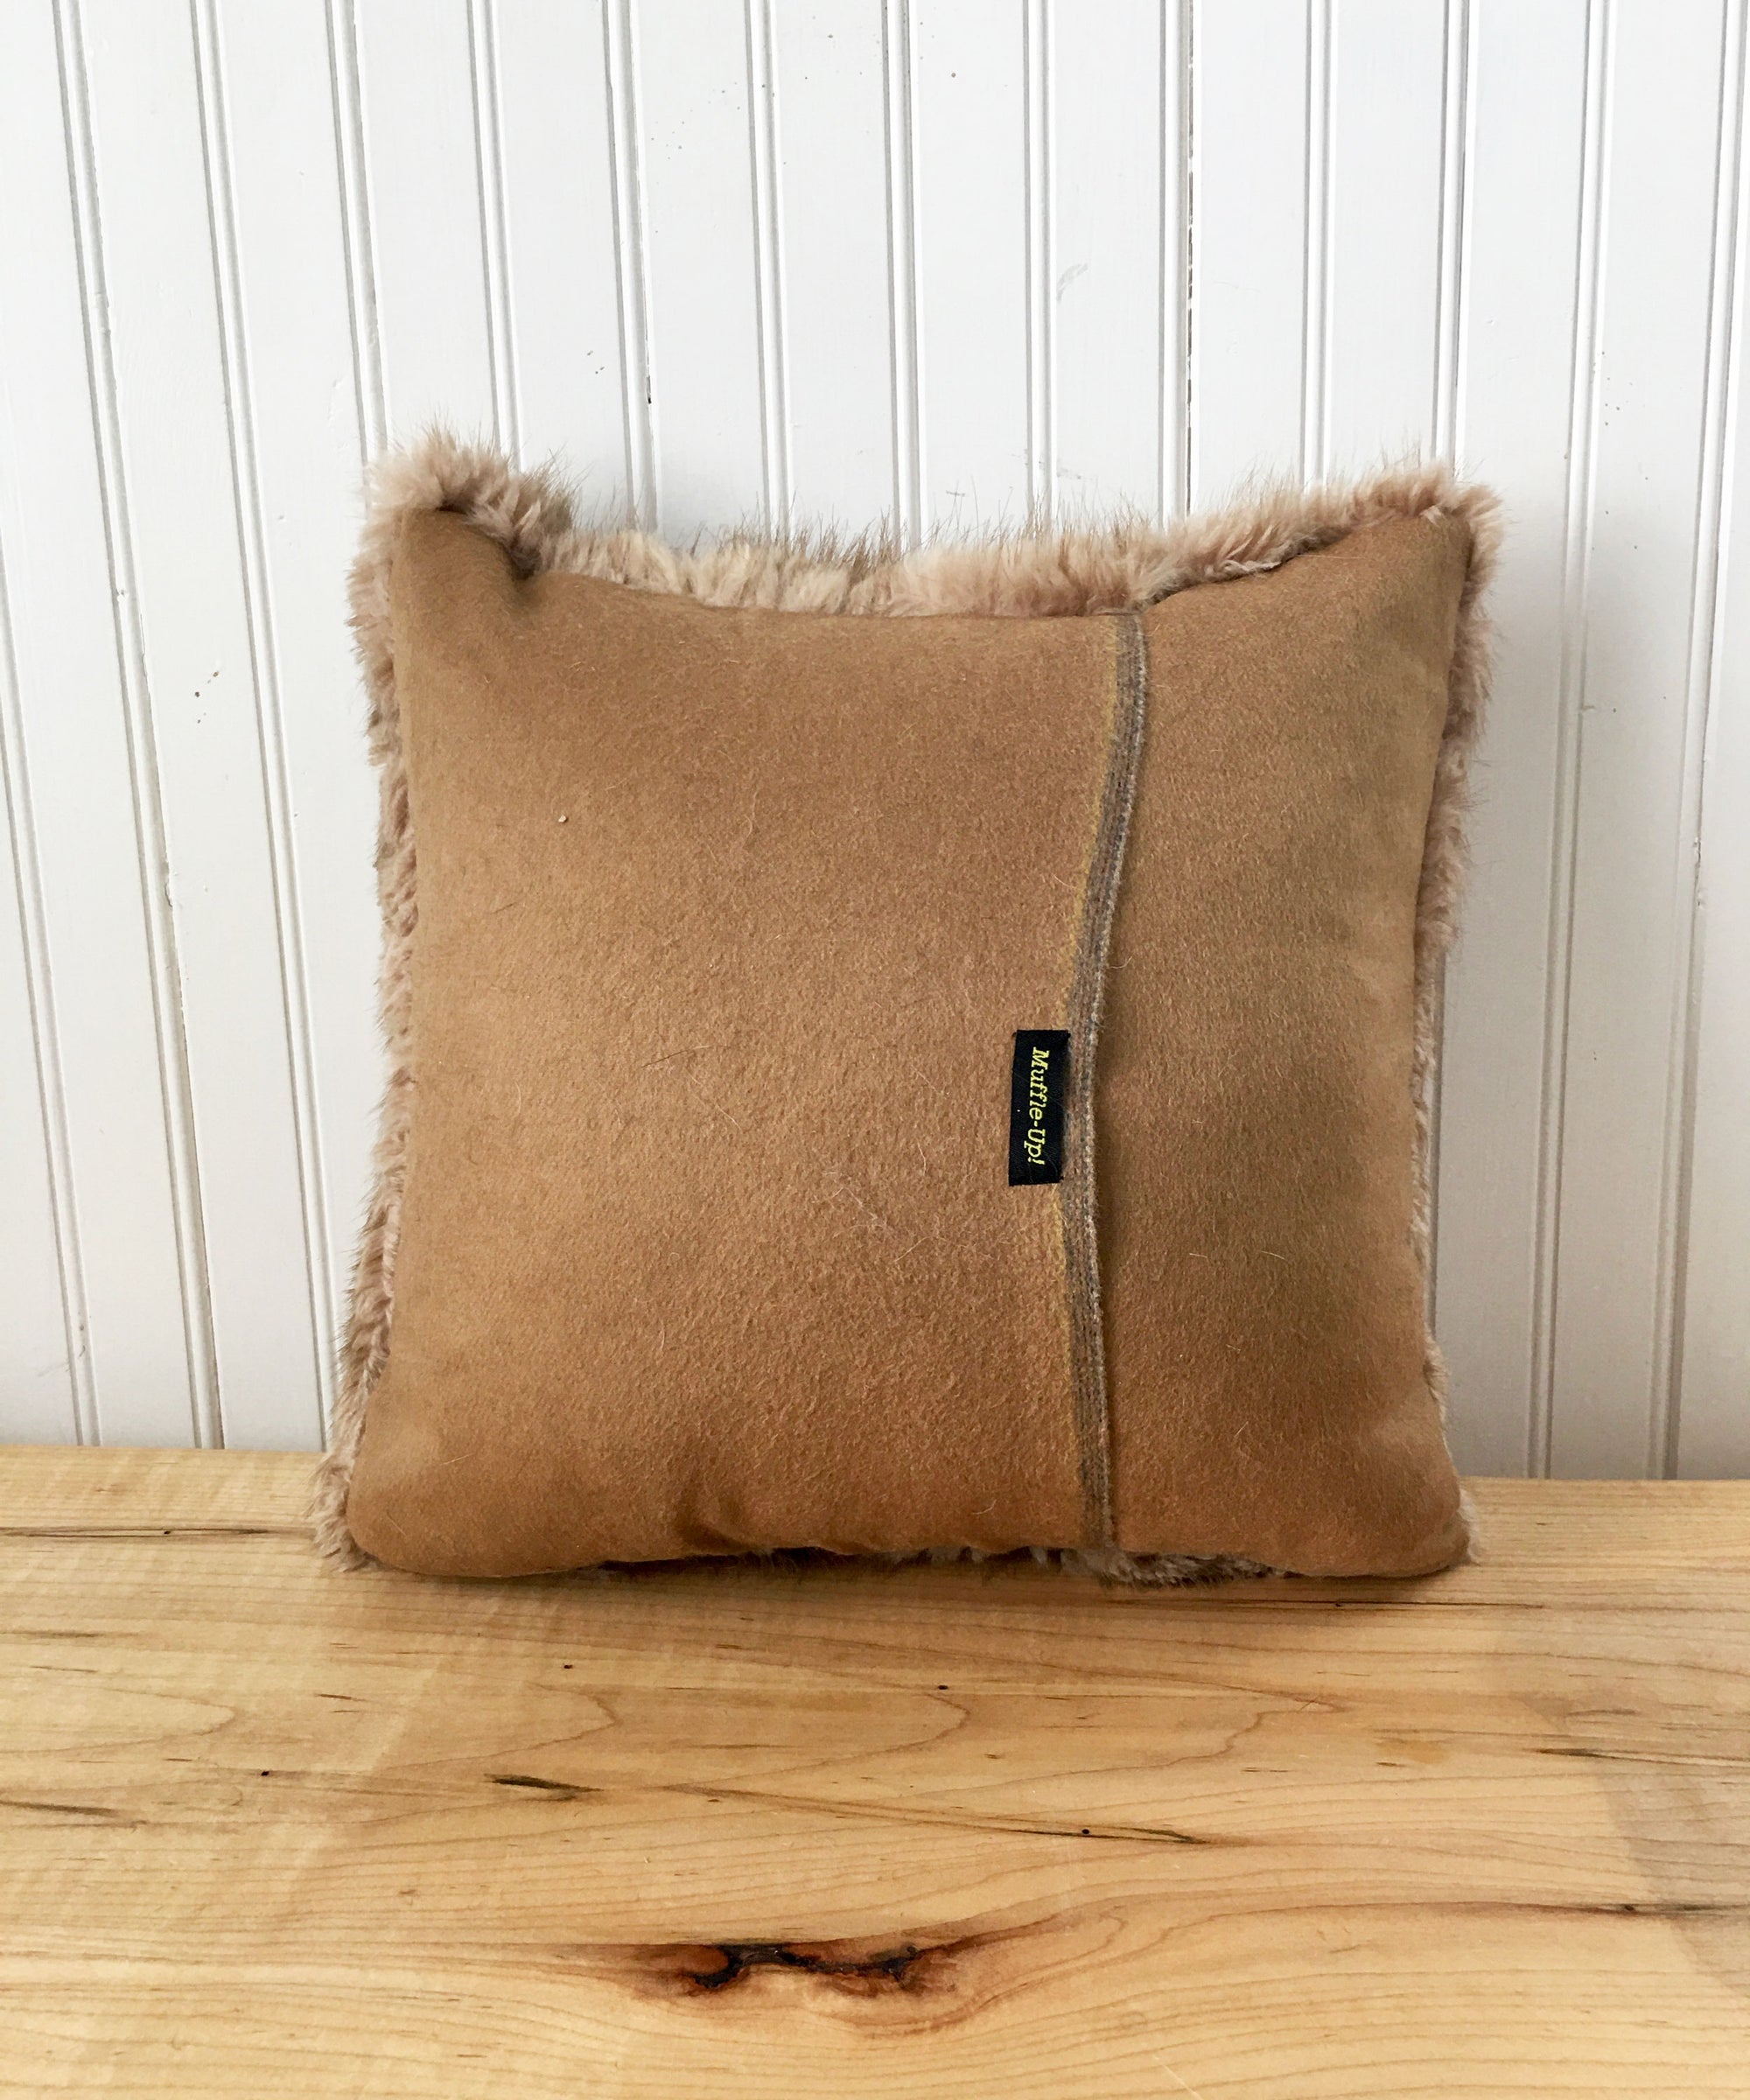 Square Fur Accent Pillows, 14" x 14", Golden Muskrat